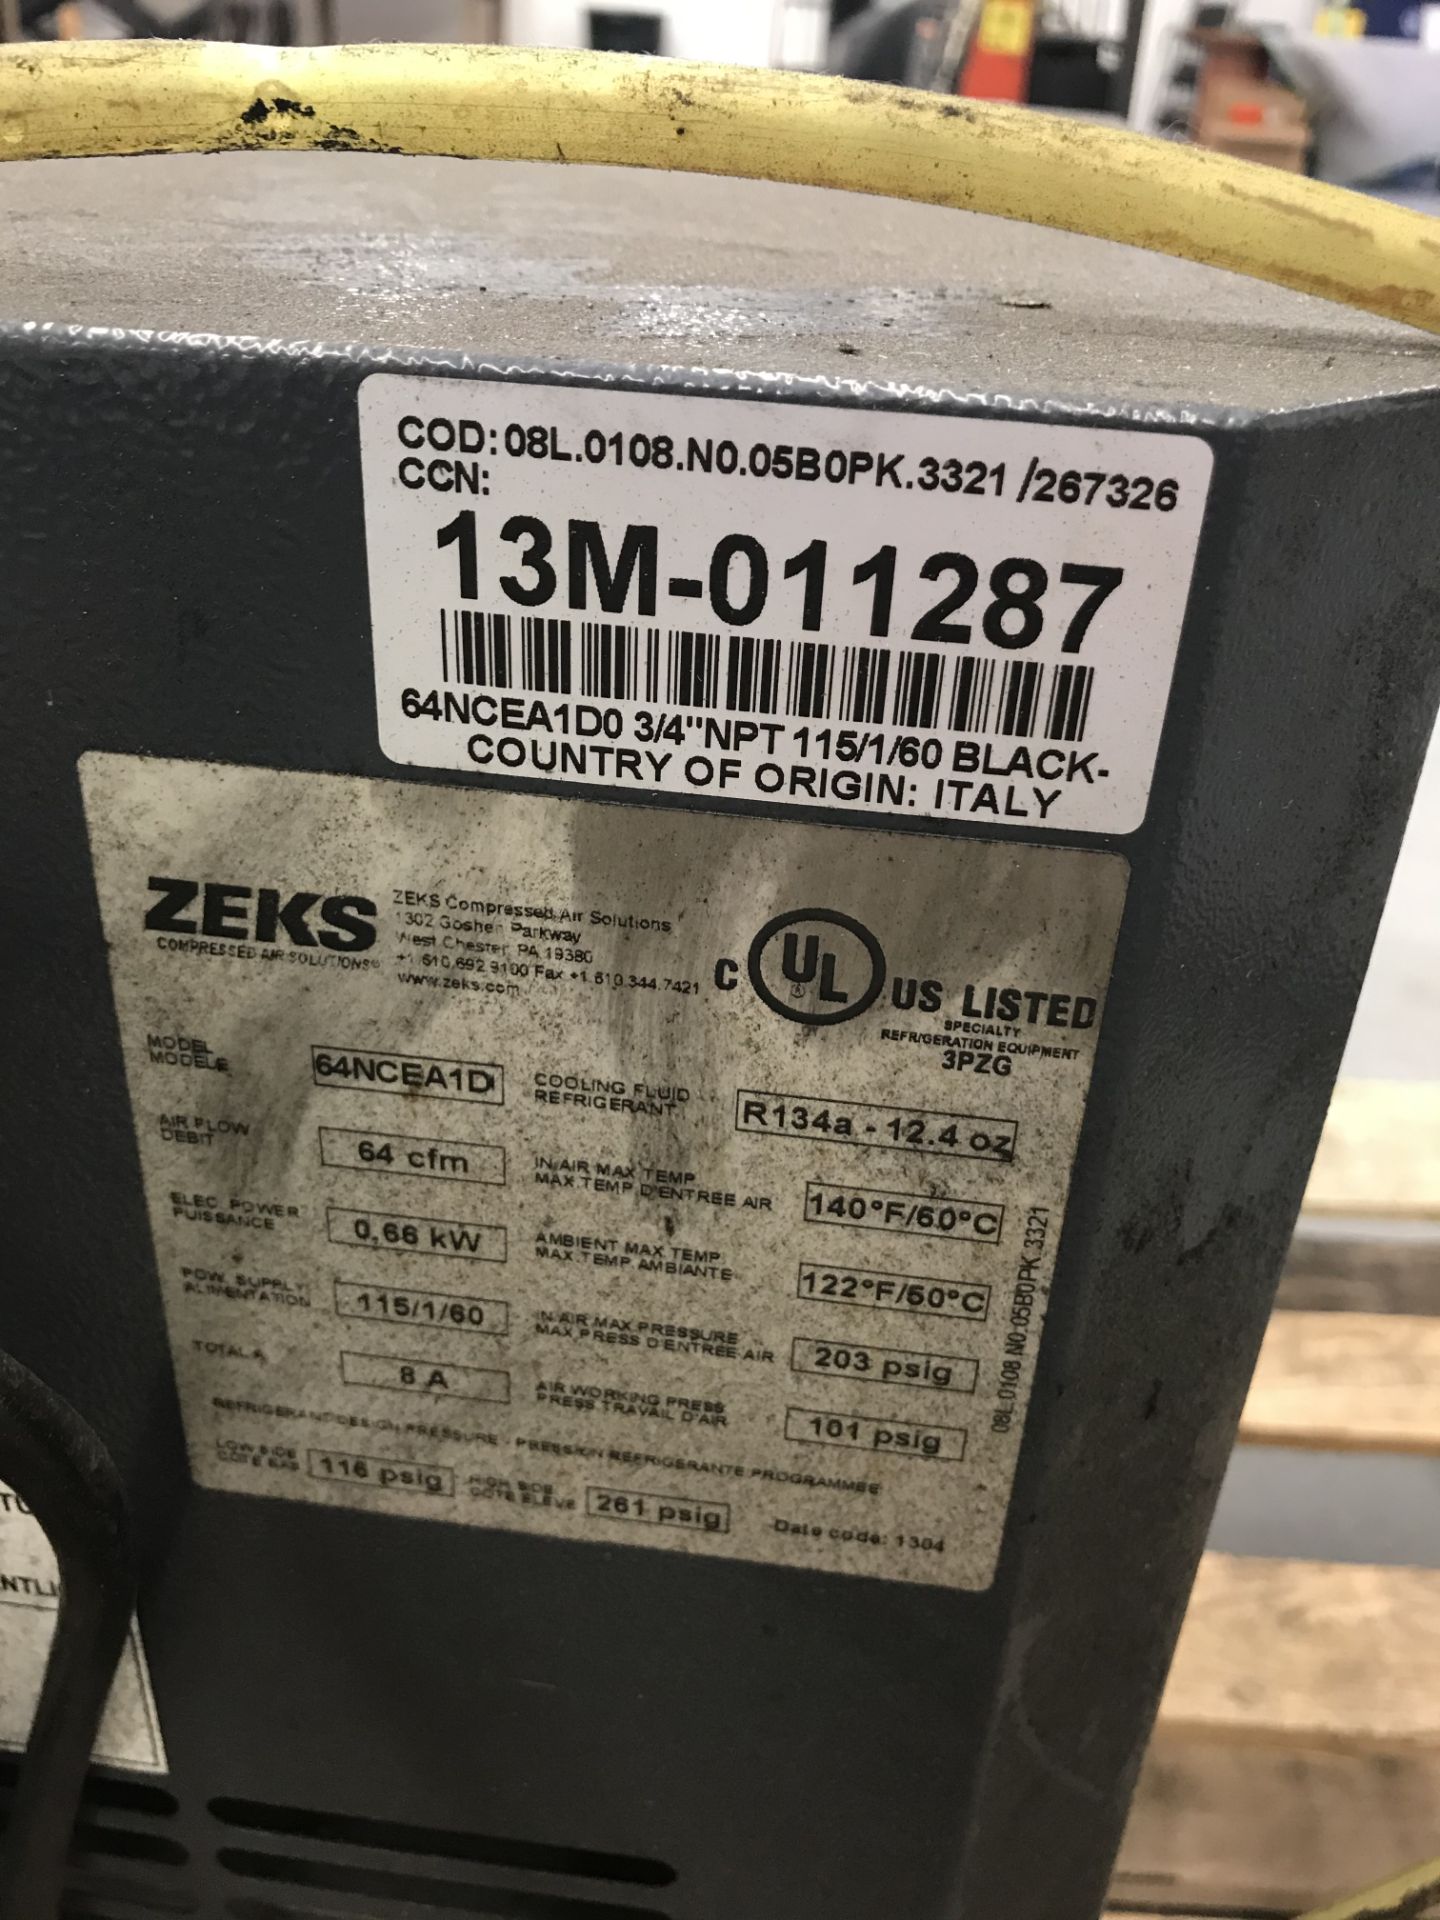 Zeks #64NCEA1D 64CFM Refrigerated Compressed Air Dryer - Image 2 of 2